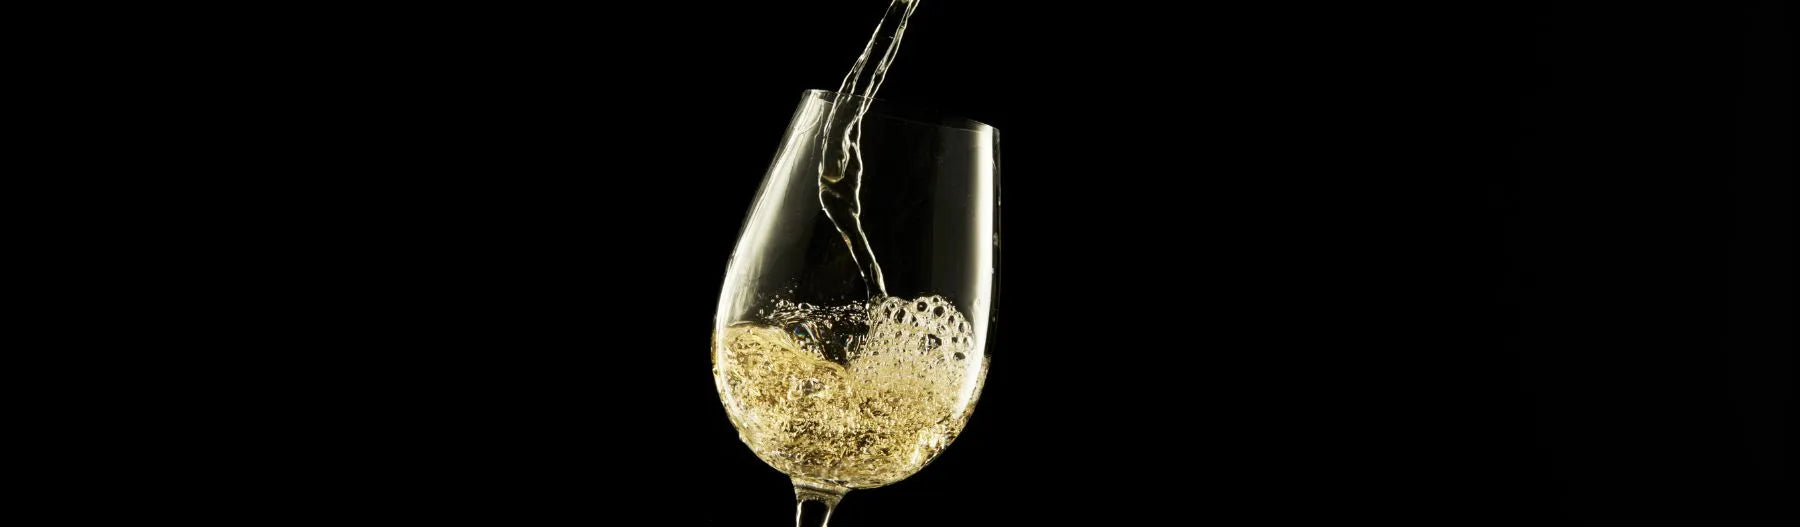 Descubra nuestra colección de vino blanco sin alcohol, una selección del mejor vino blanco halal